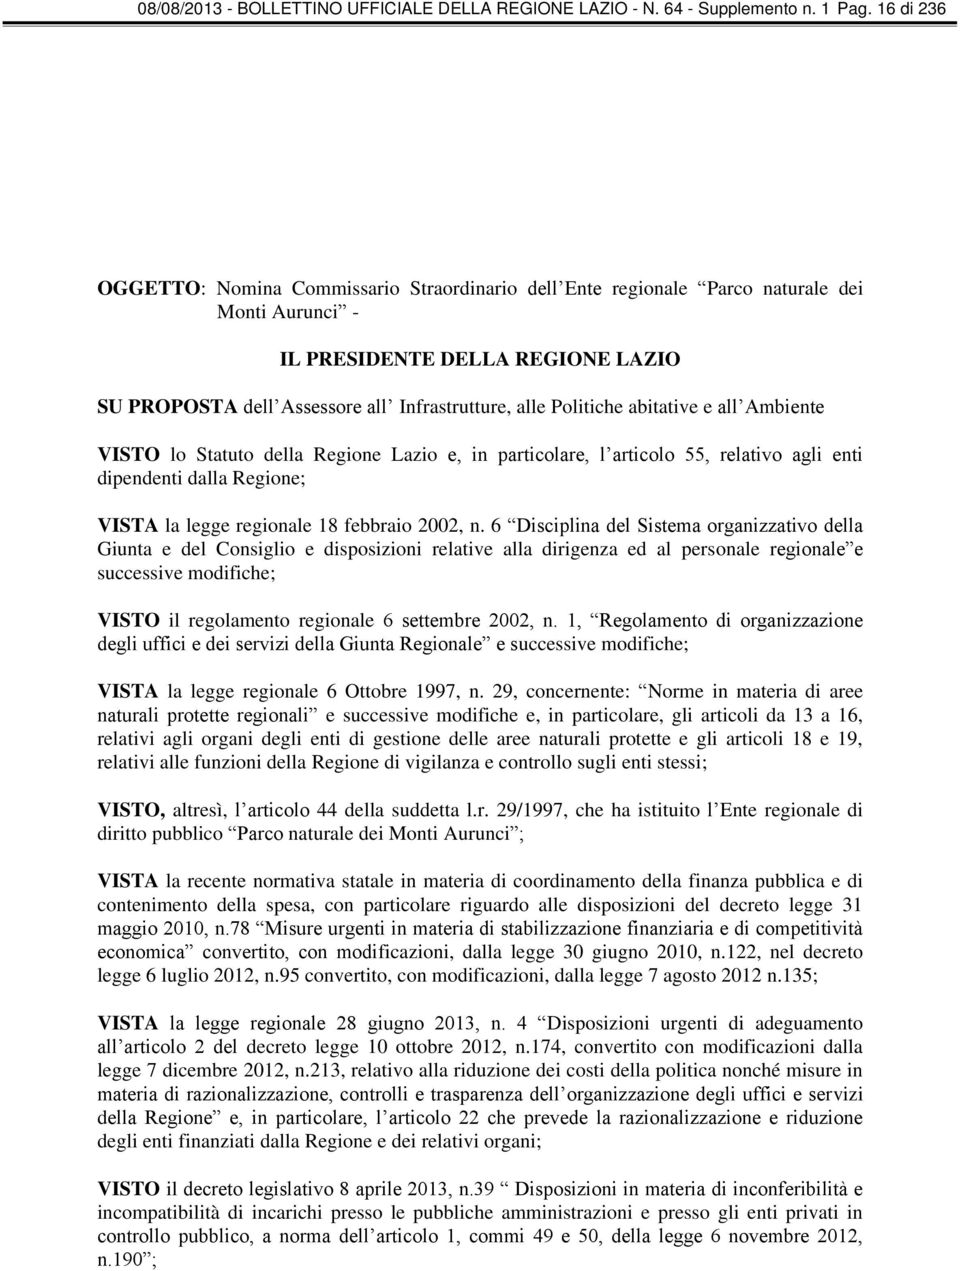 Politiche abitative e all Ambiente VISTO lo Statuto della Regione Lazio e, in particolare, l articolo 55, relativo agli enti dipendenti dalla Regione; VISTA la legge regionale 18 febbraio 2002, n.